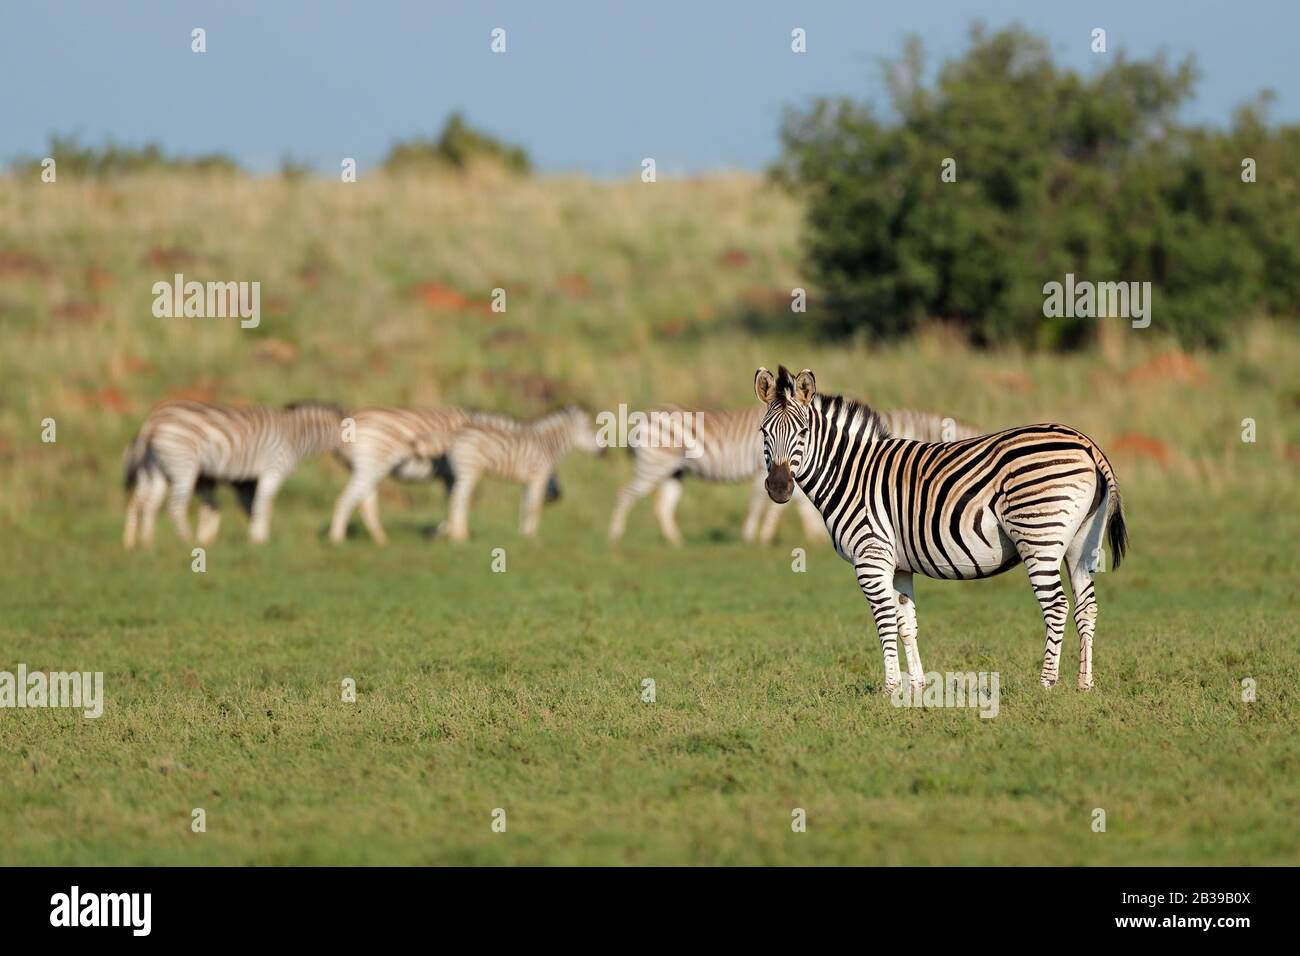 Manada de cebras planicies (Equus burchelli) en hábitat natural, Sudáfrica Foto de stock